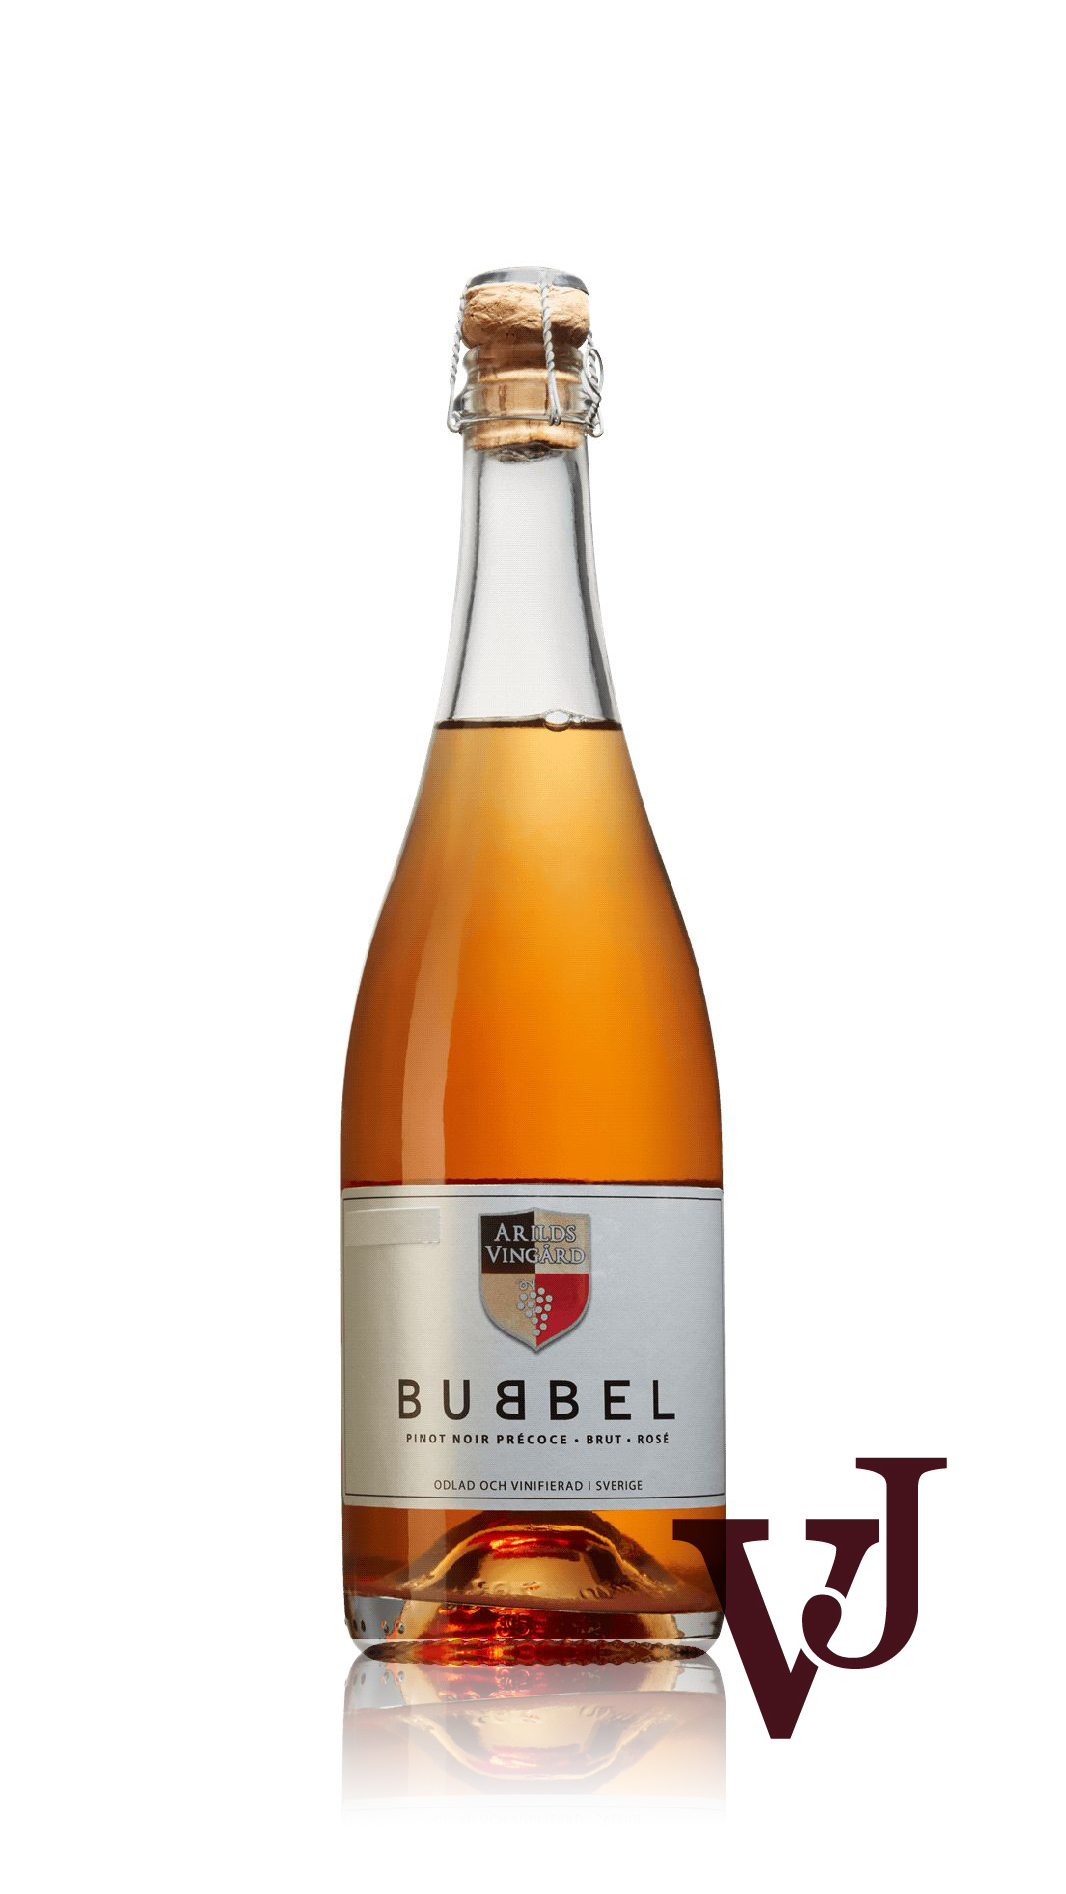 Mousserande Vin - Arilds Vingård Bubbel Rosé artikel nummer 3621501 från producenten Arilds vingård från området Sverige